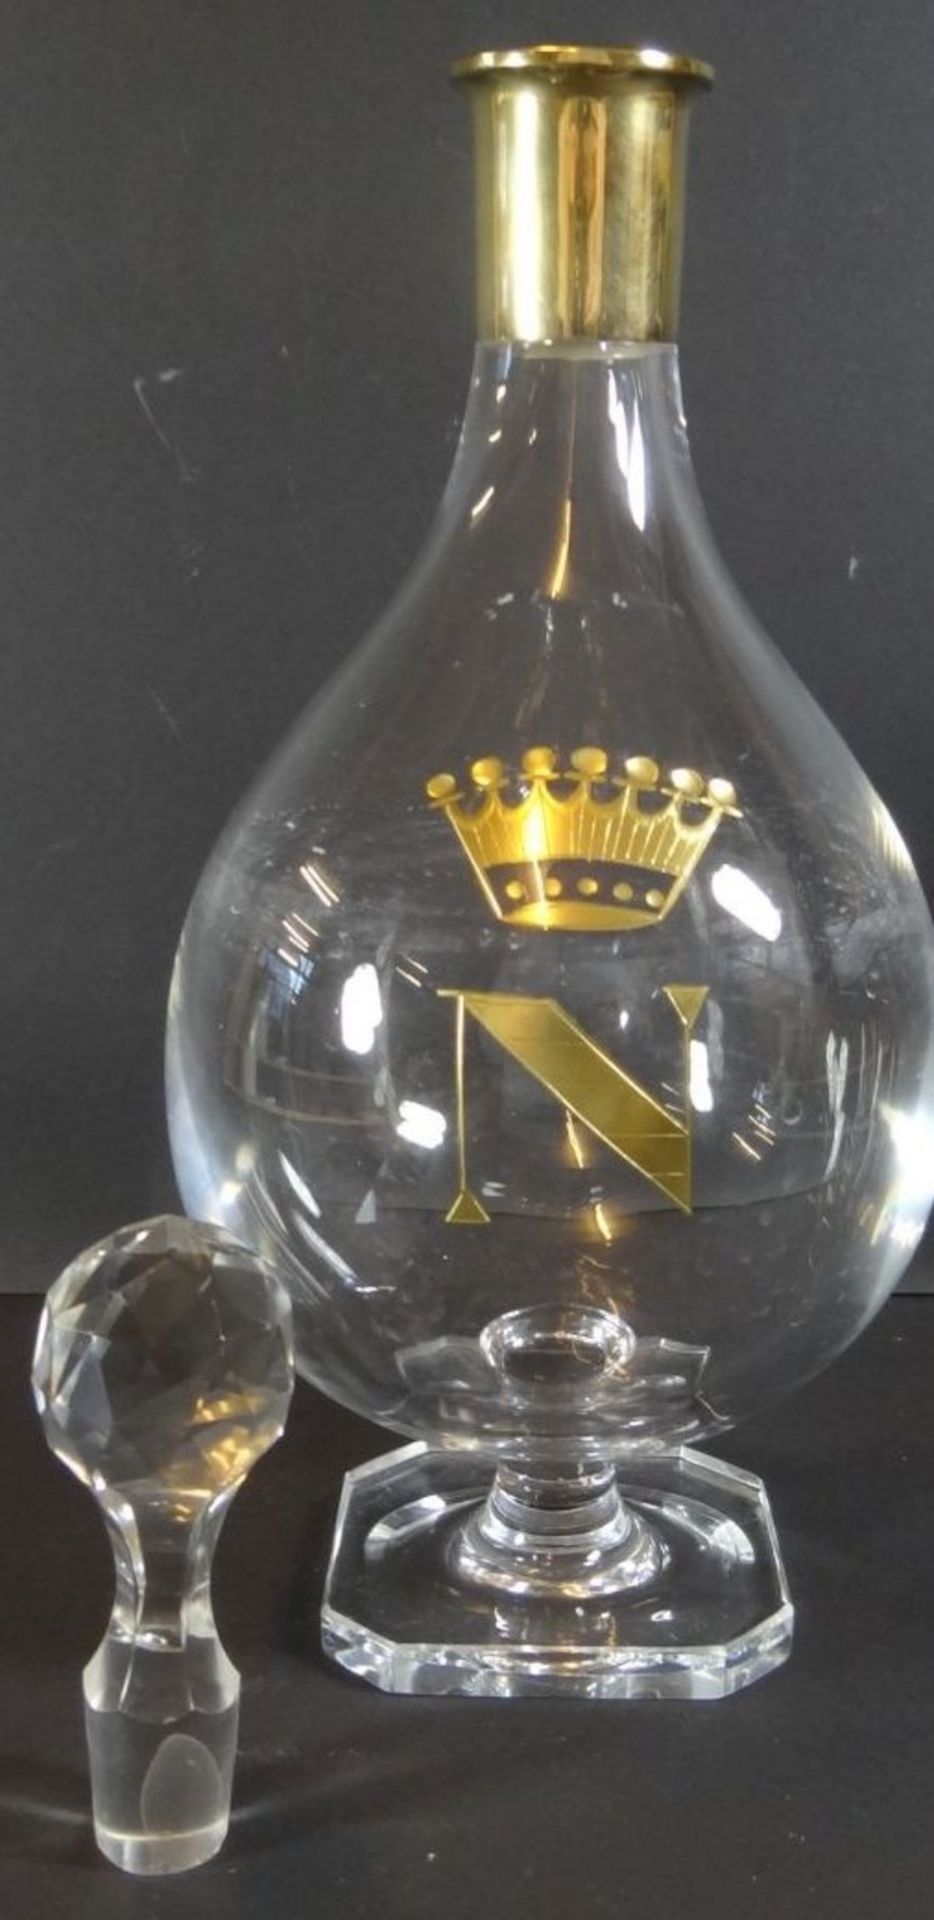 Kristall-Karaffe auf Stand, Silberhals-925-, vergoldet, auf Stand, H-31 cm, Krone mit "N", Stöpsel - Image 5 of 7